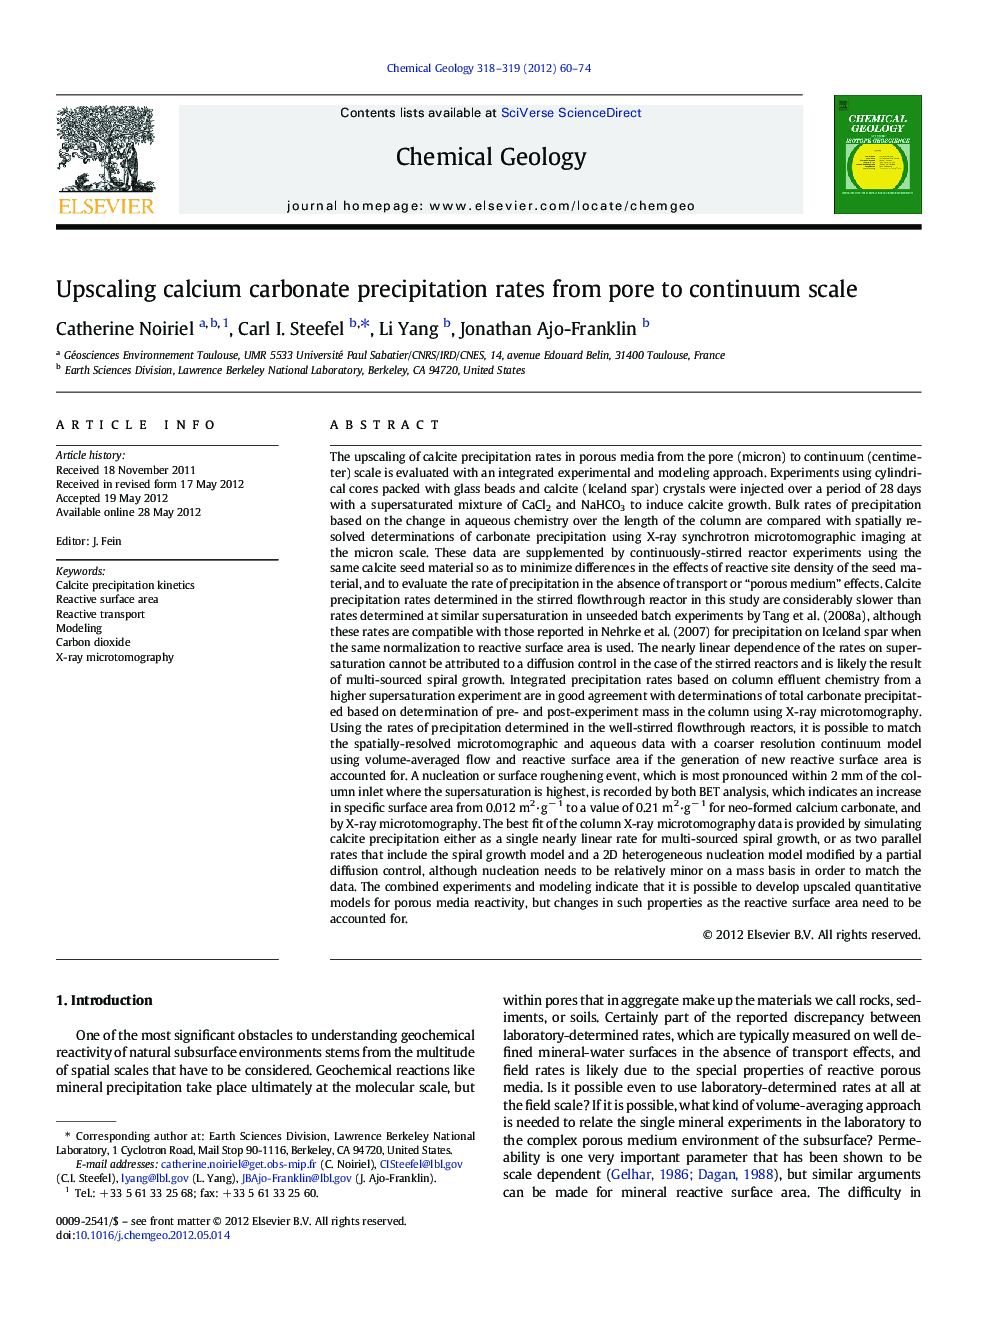 Upscaling calcium carbonate precipitation rates from pore to continuum scale